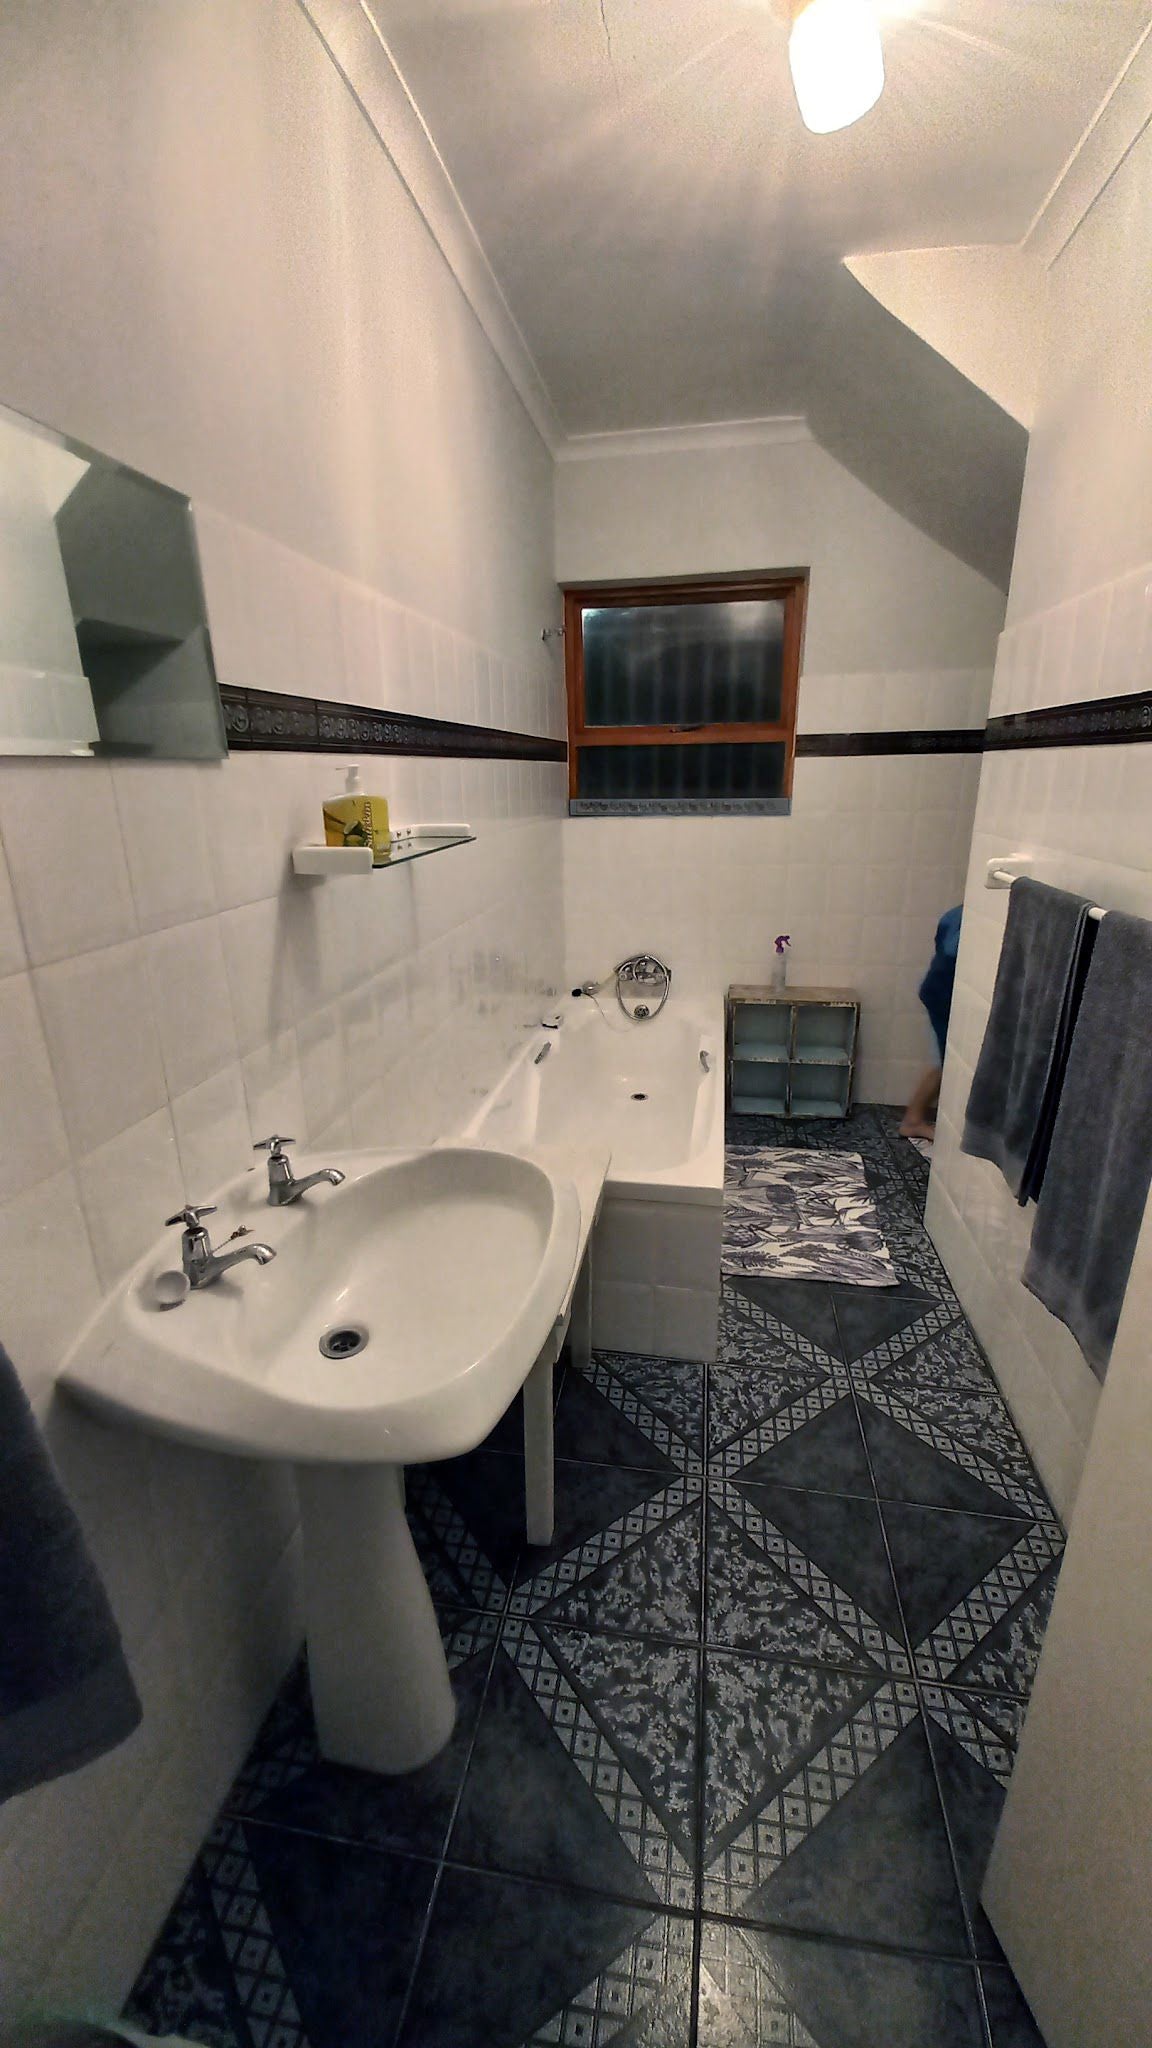 Home Grown Voelklip Hermanus Western Cape South Africa Bathroom